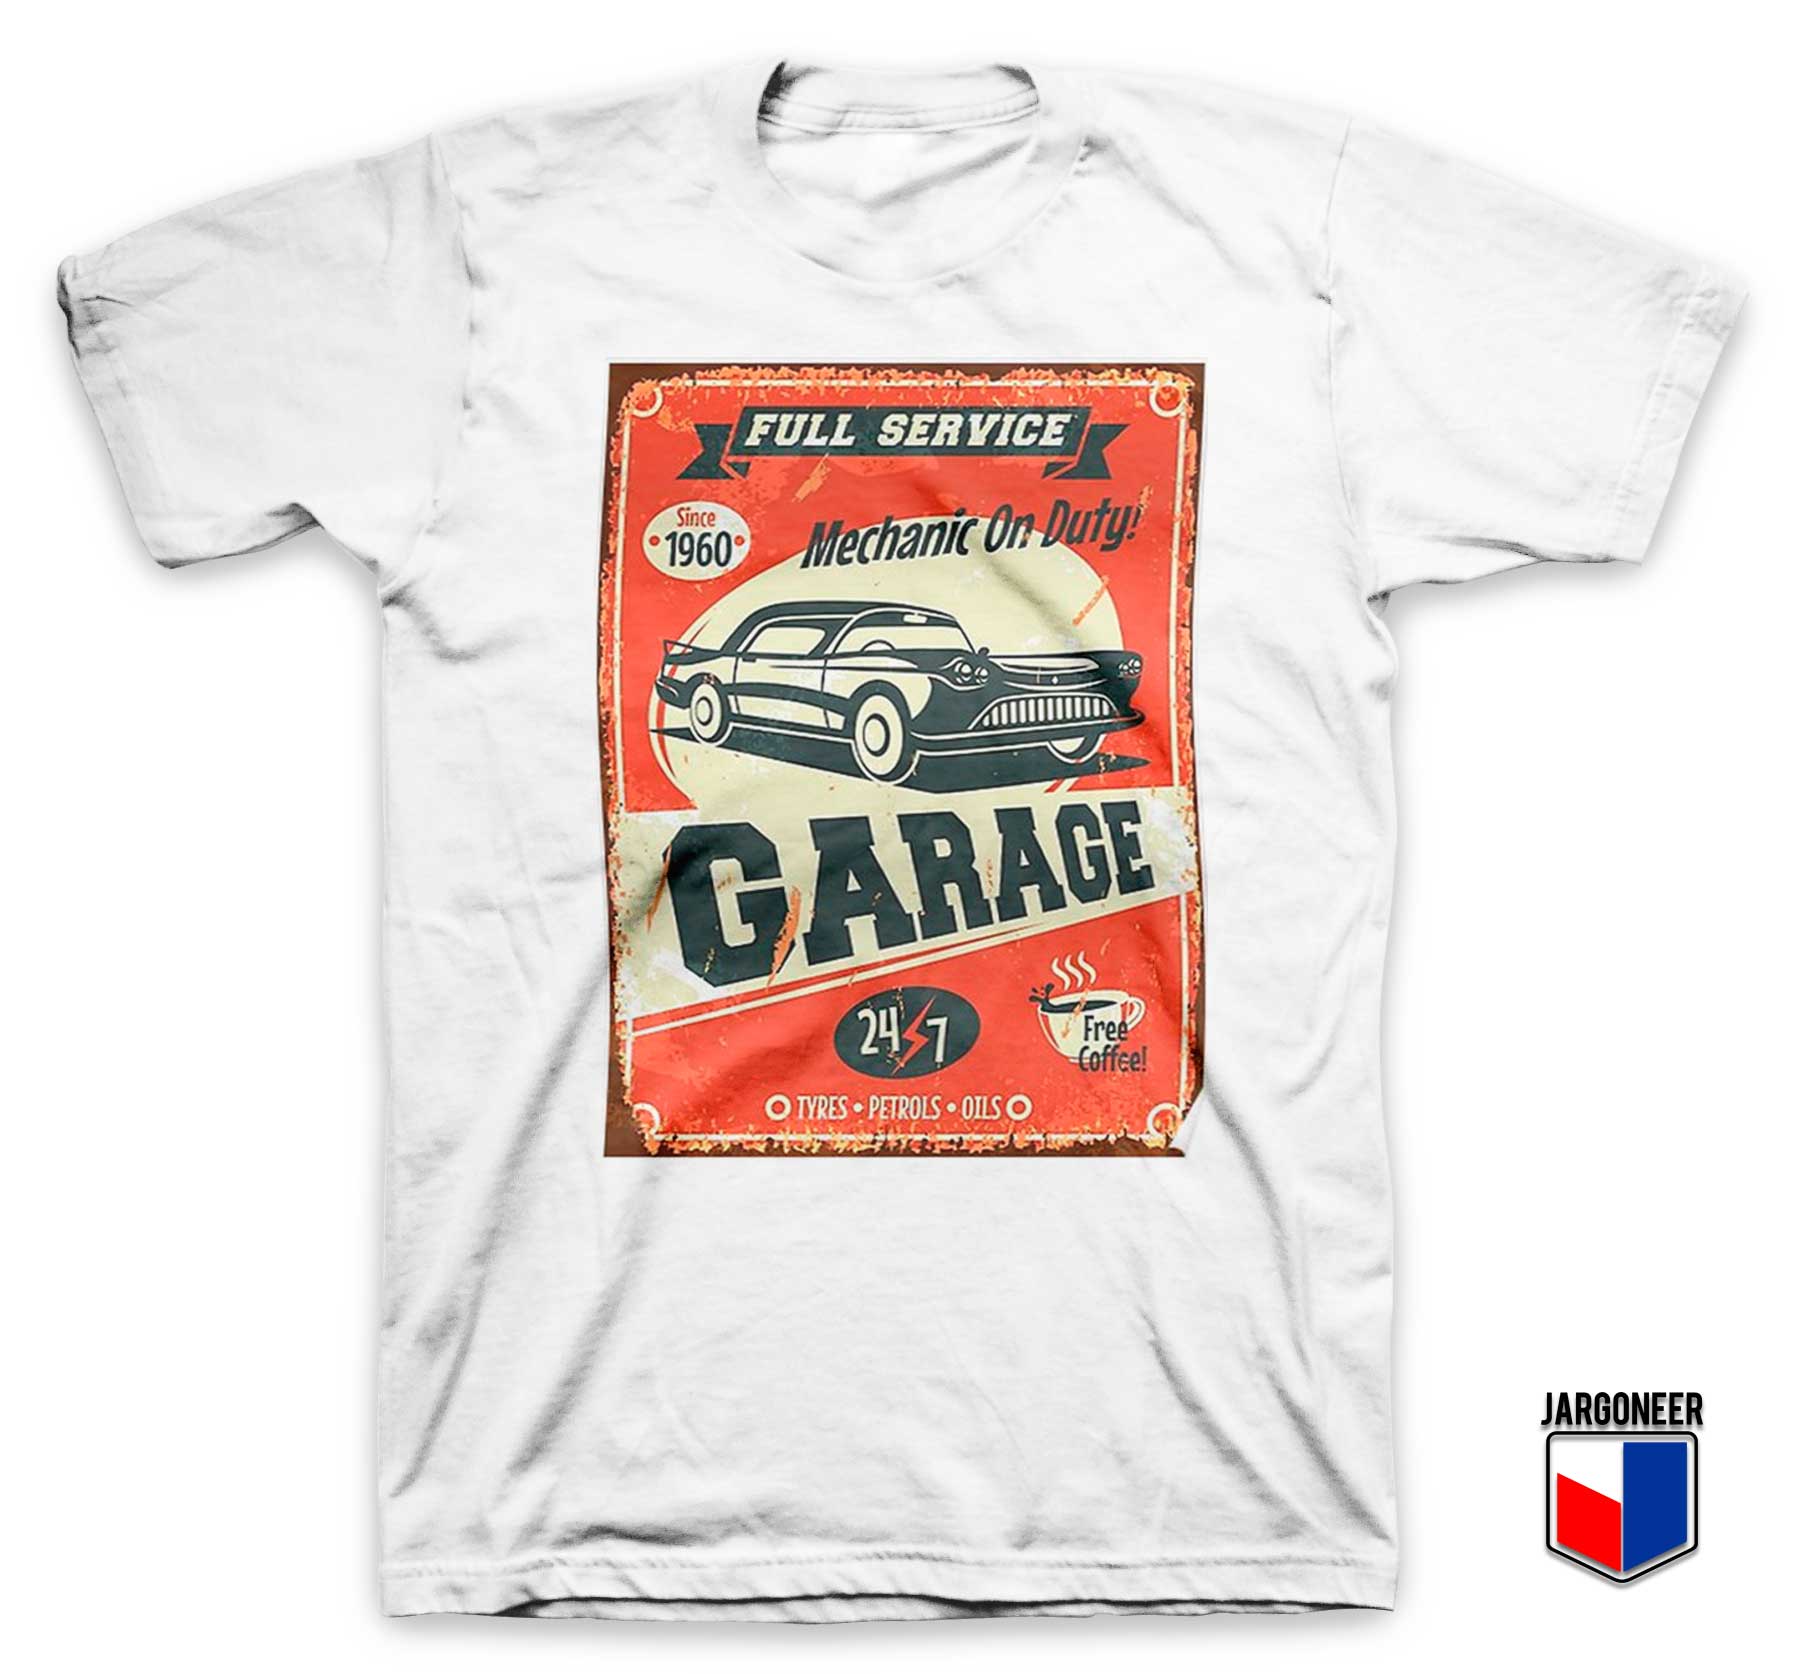 Mechanic On Duty Garage White T Shirt - Shop Unique Graphic Cool Shirt Designs